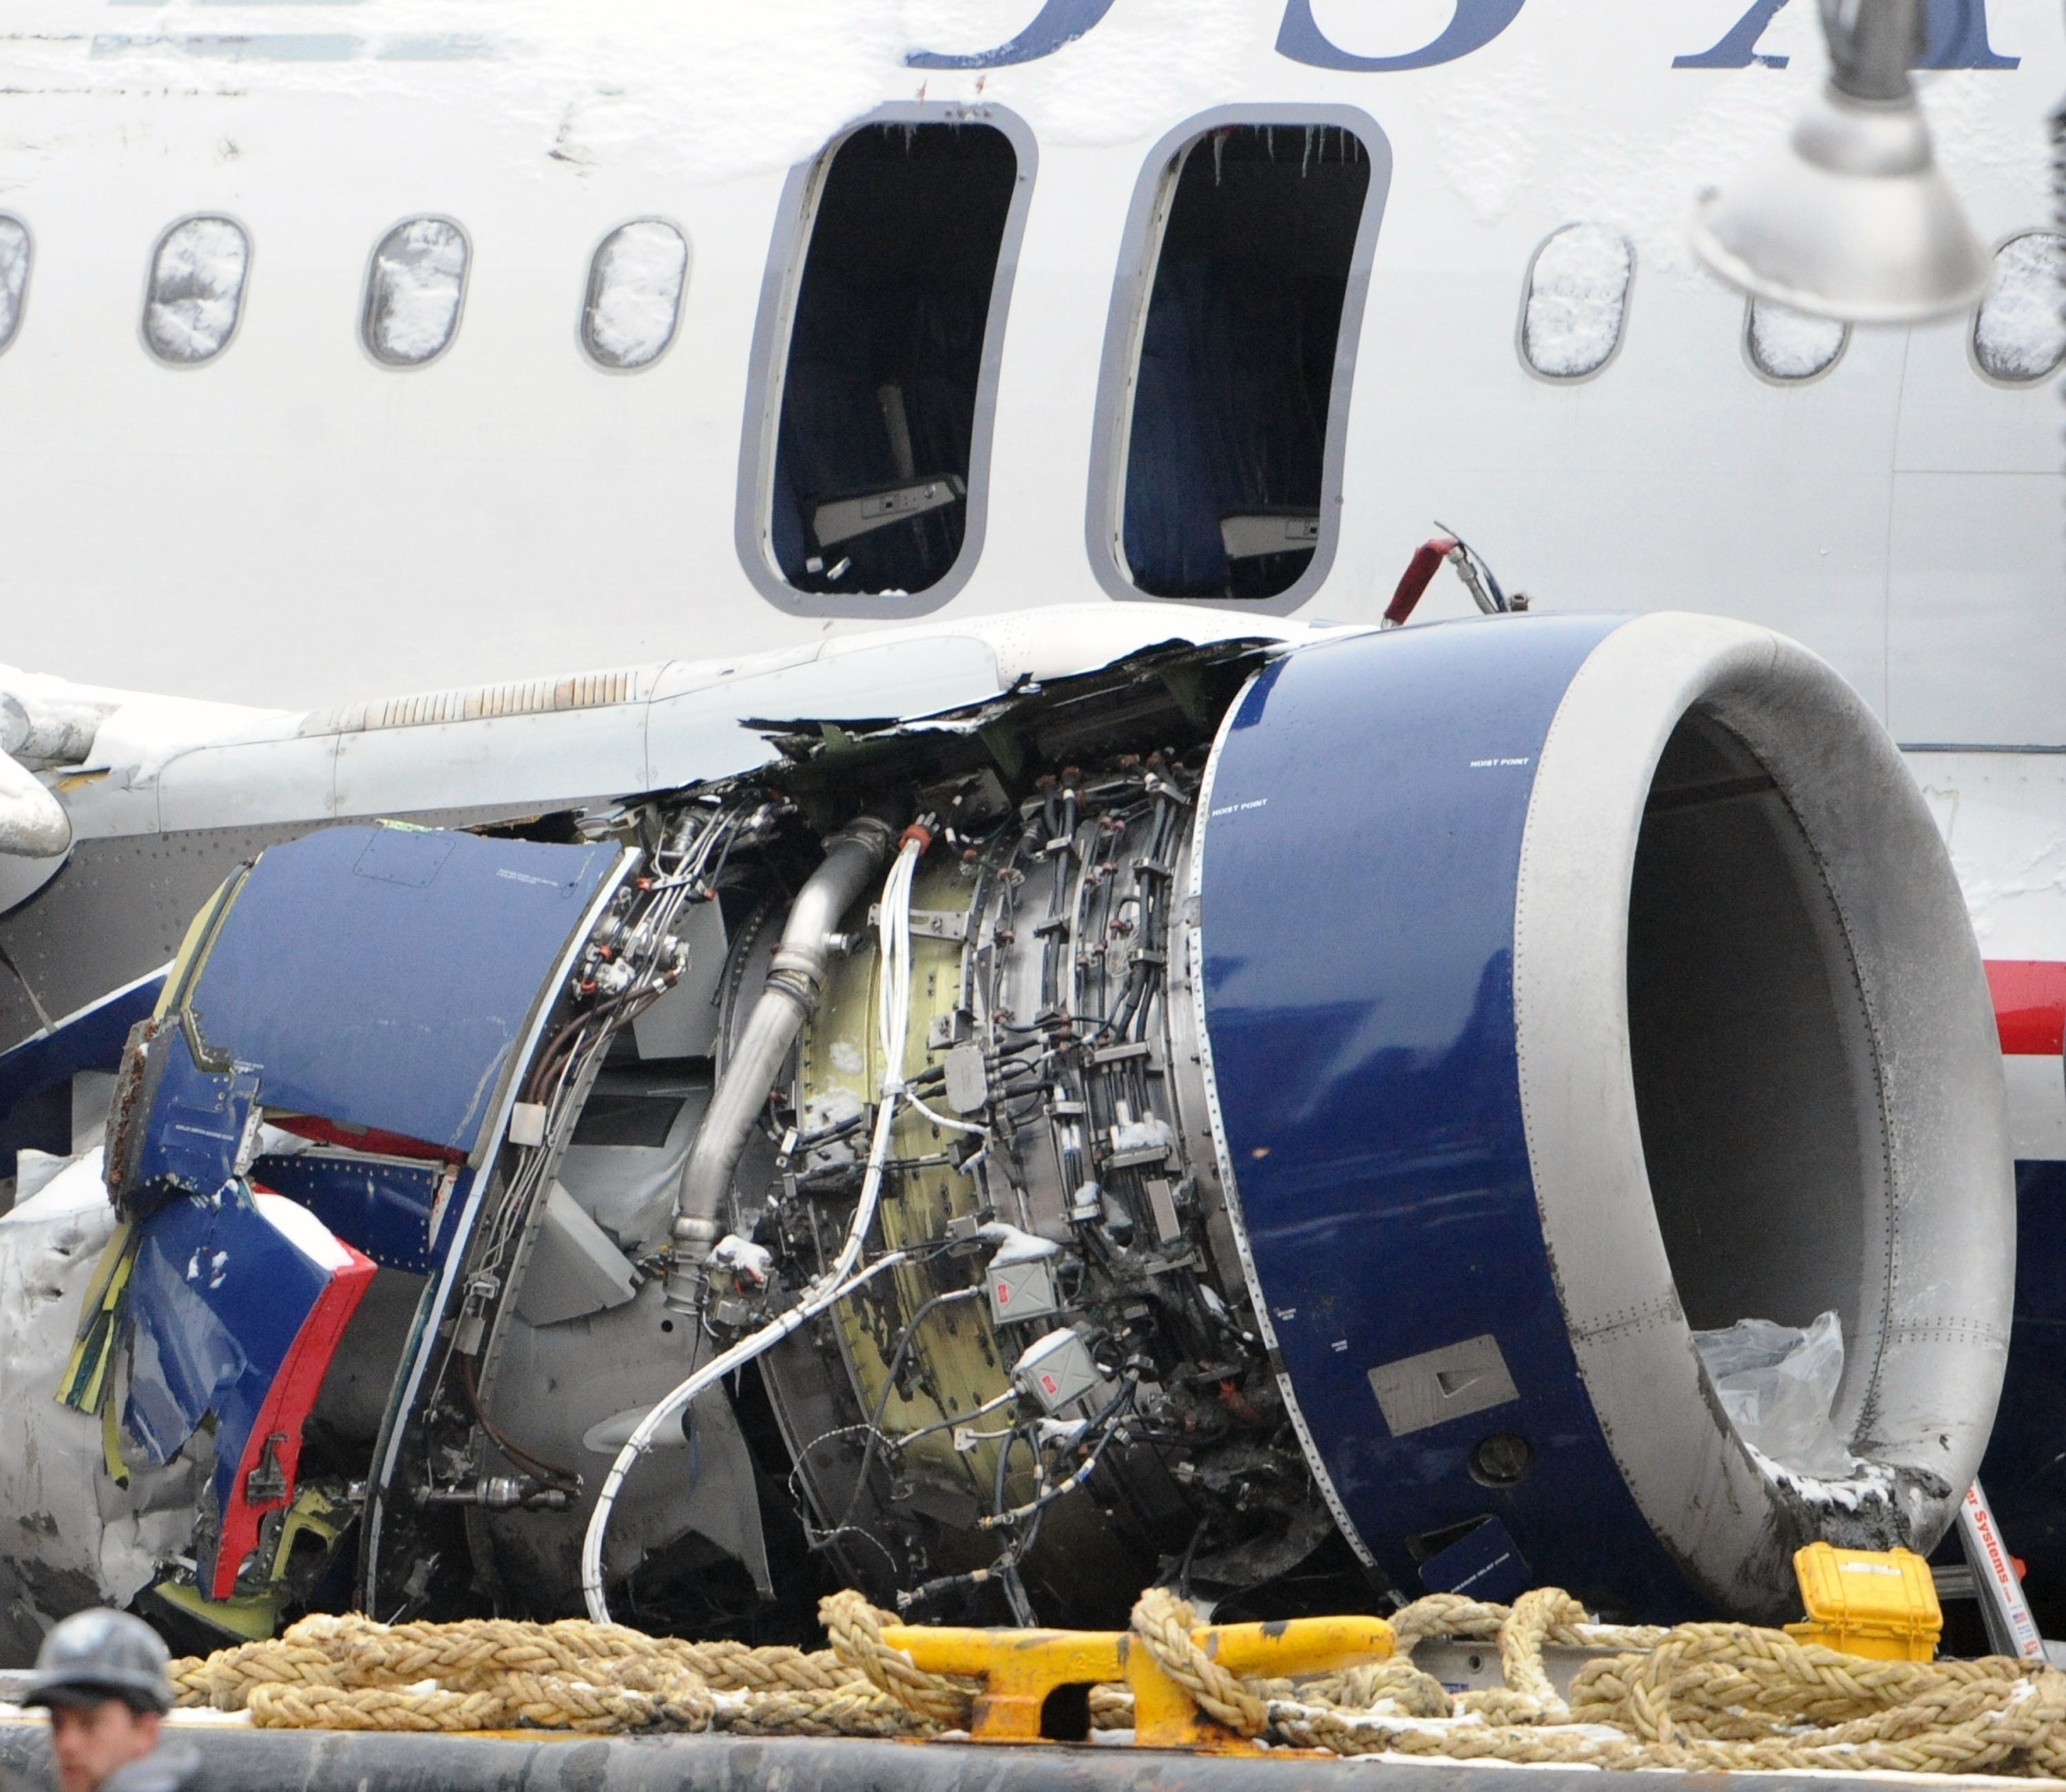 El motor derecho del Airbus del vuelo 1549 de US Airways, totalmente destrozado tras impactar contra una bandada de gansos canadienses: Photo by Kpa/Zuma/Shutterstock 